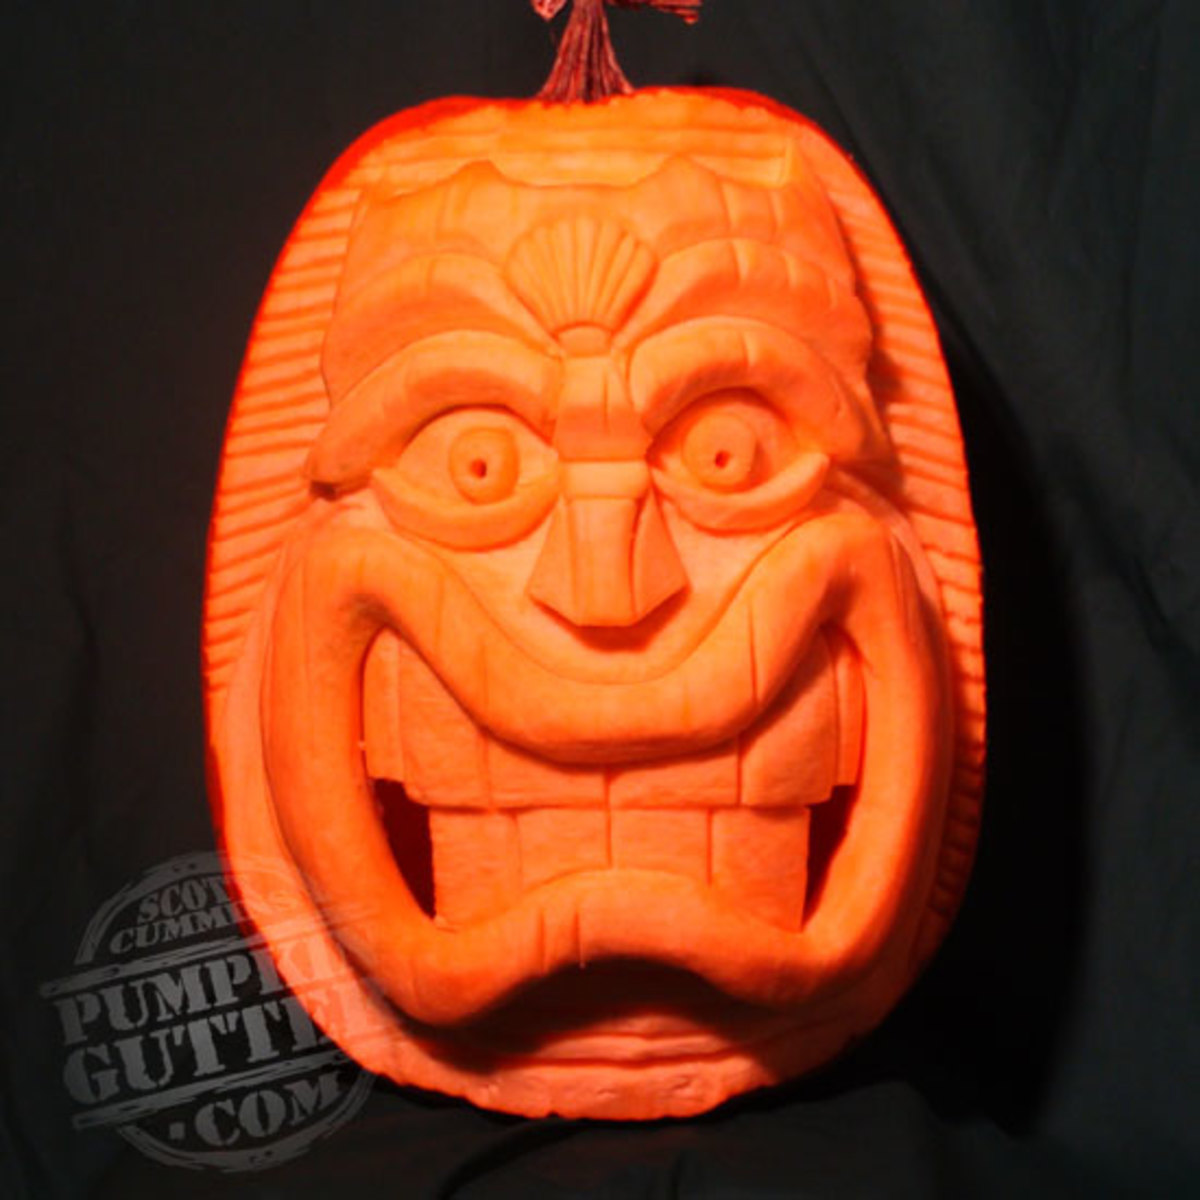 Photos of Amazing, Unique Pumpkin Carving Designs | HubPages